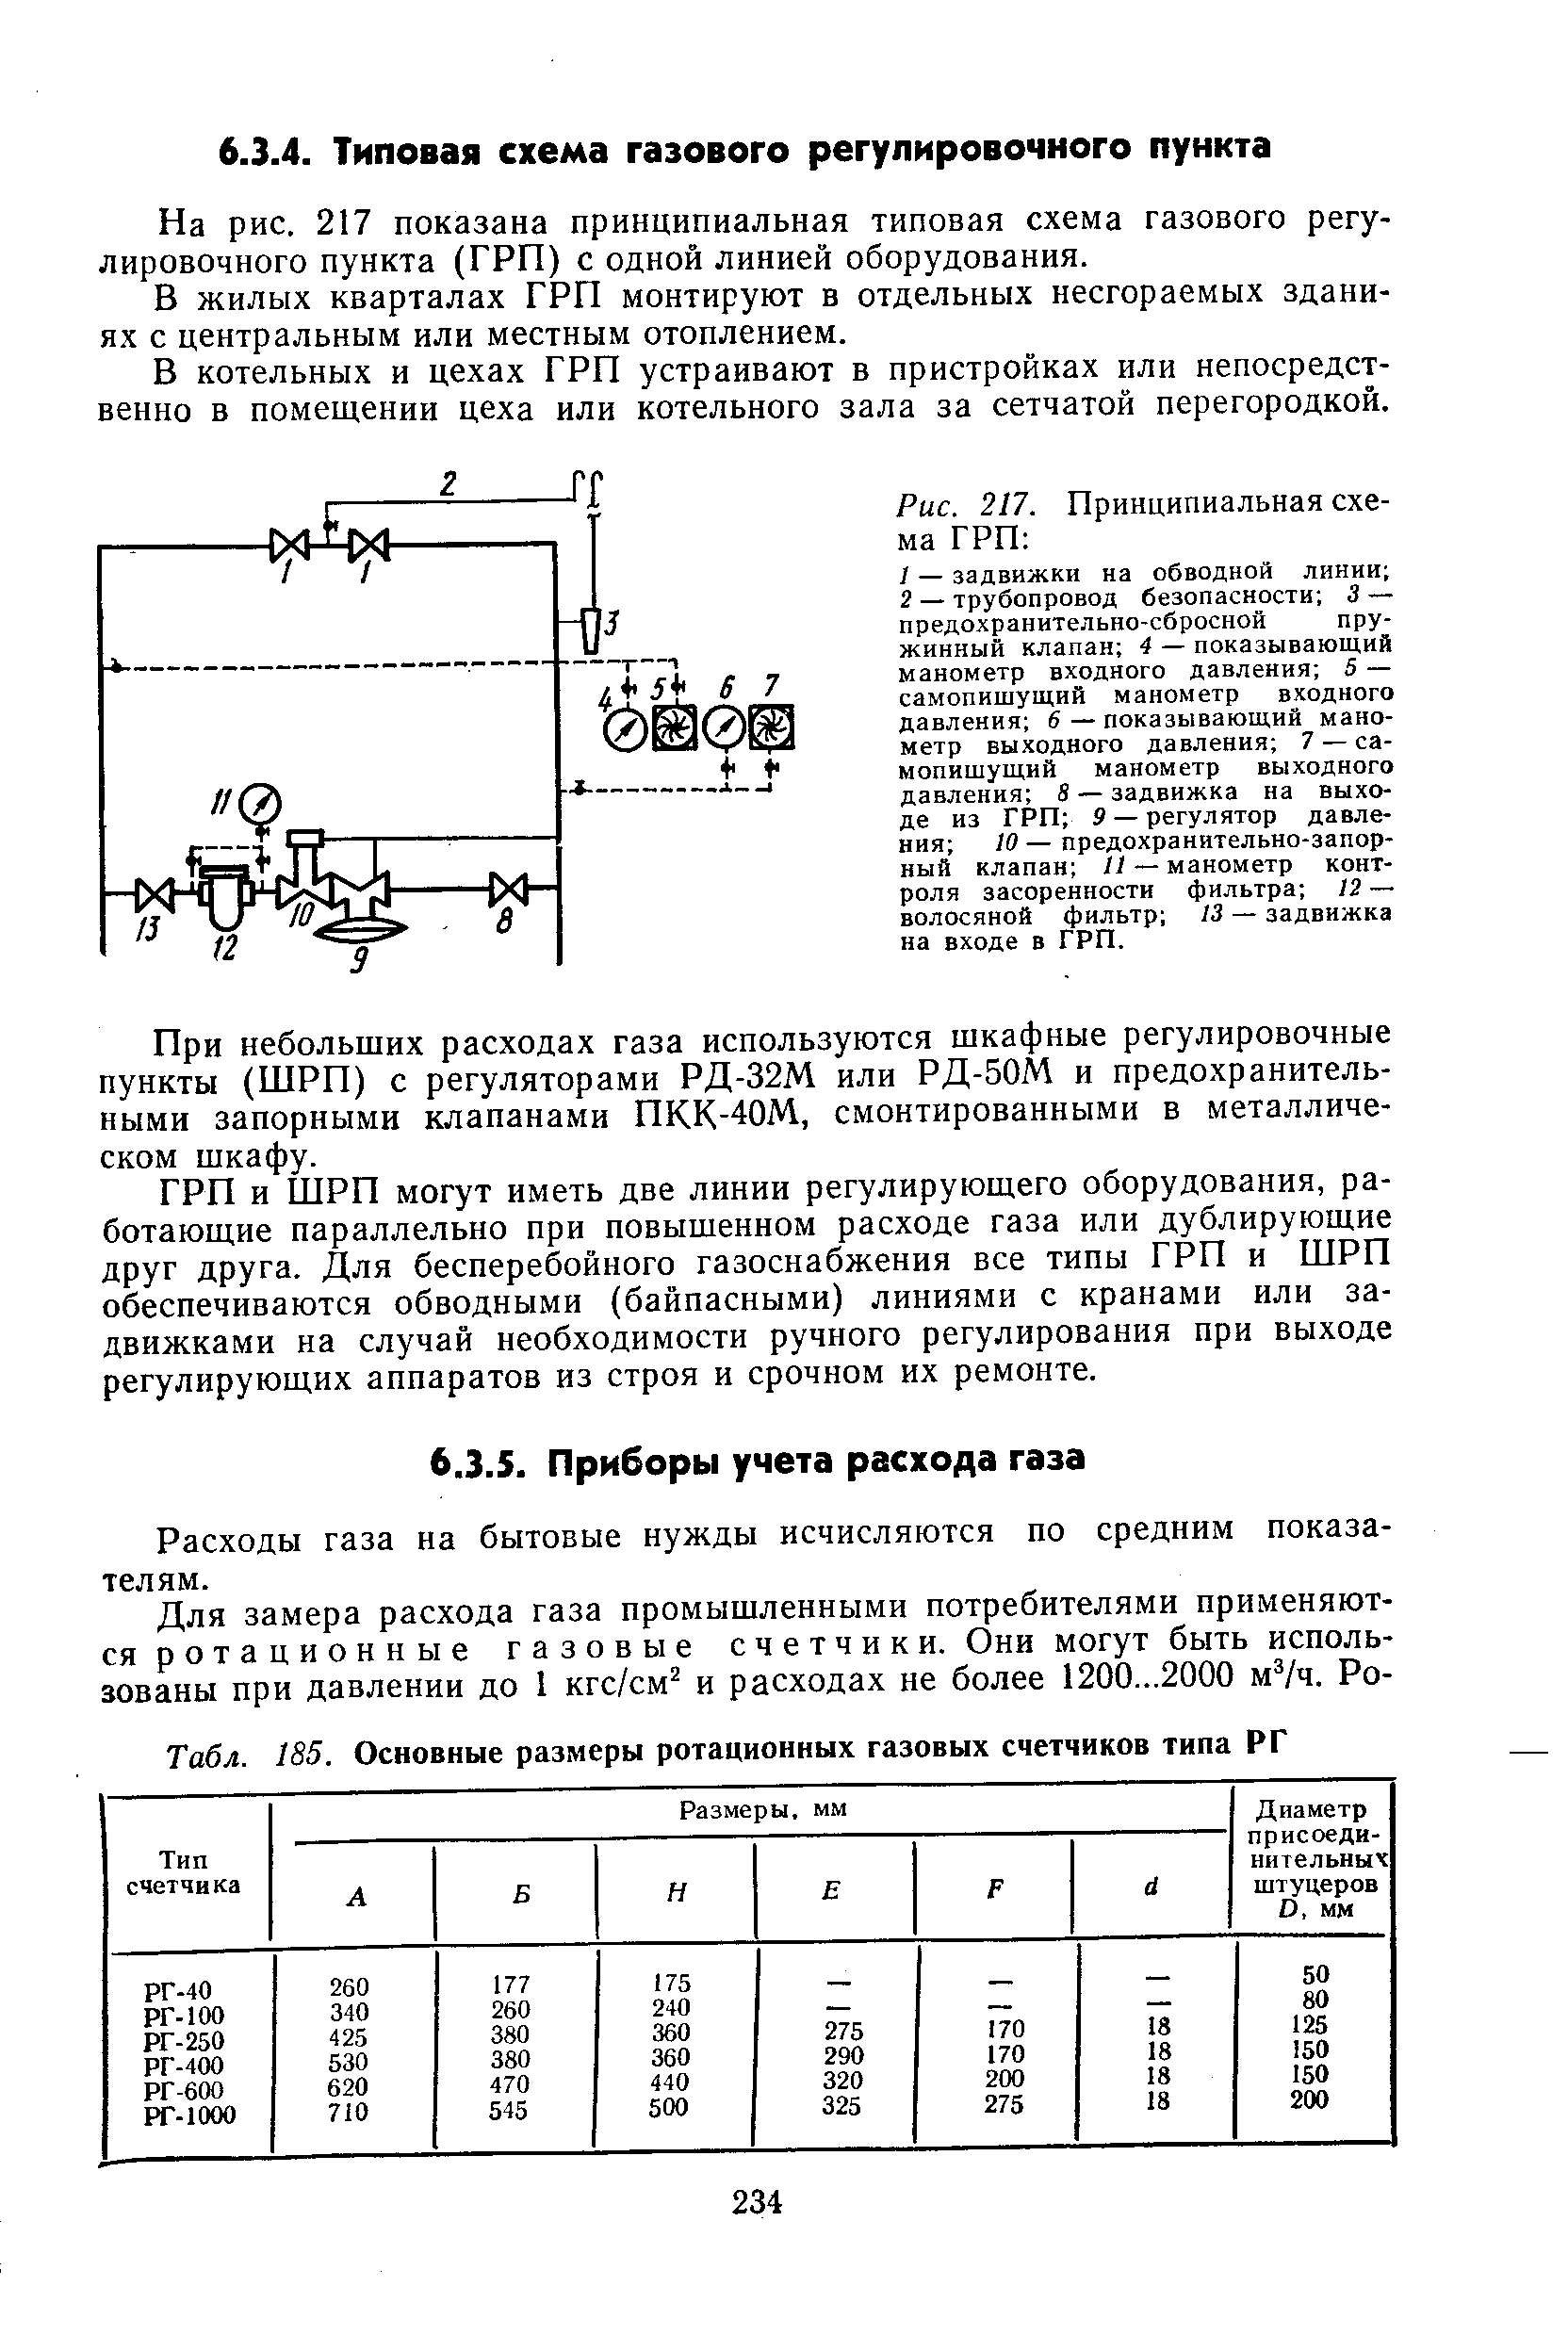 Табл. 185. Основные размеры ротационных газовых счетчиков типа РГ
